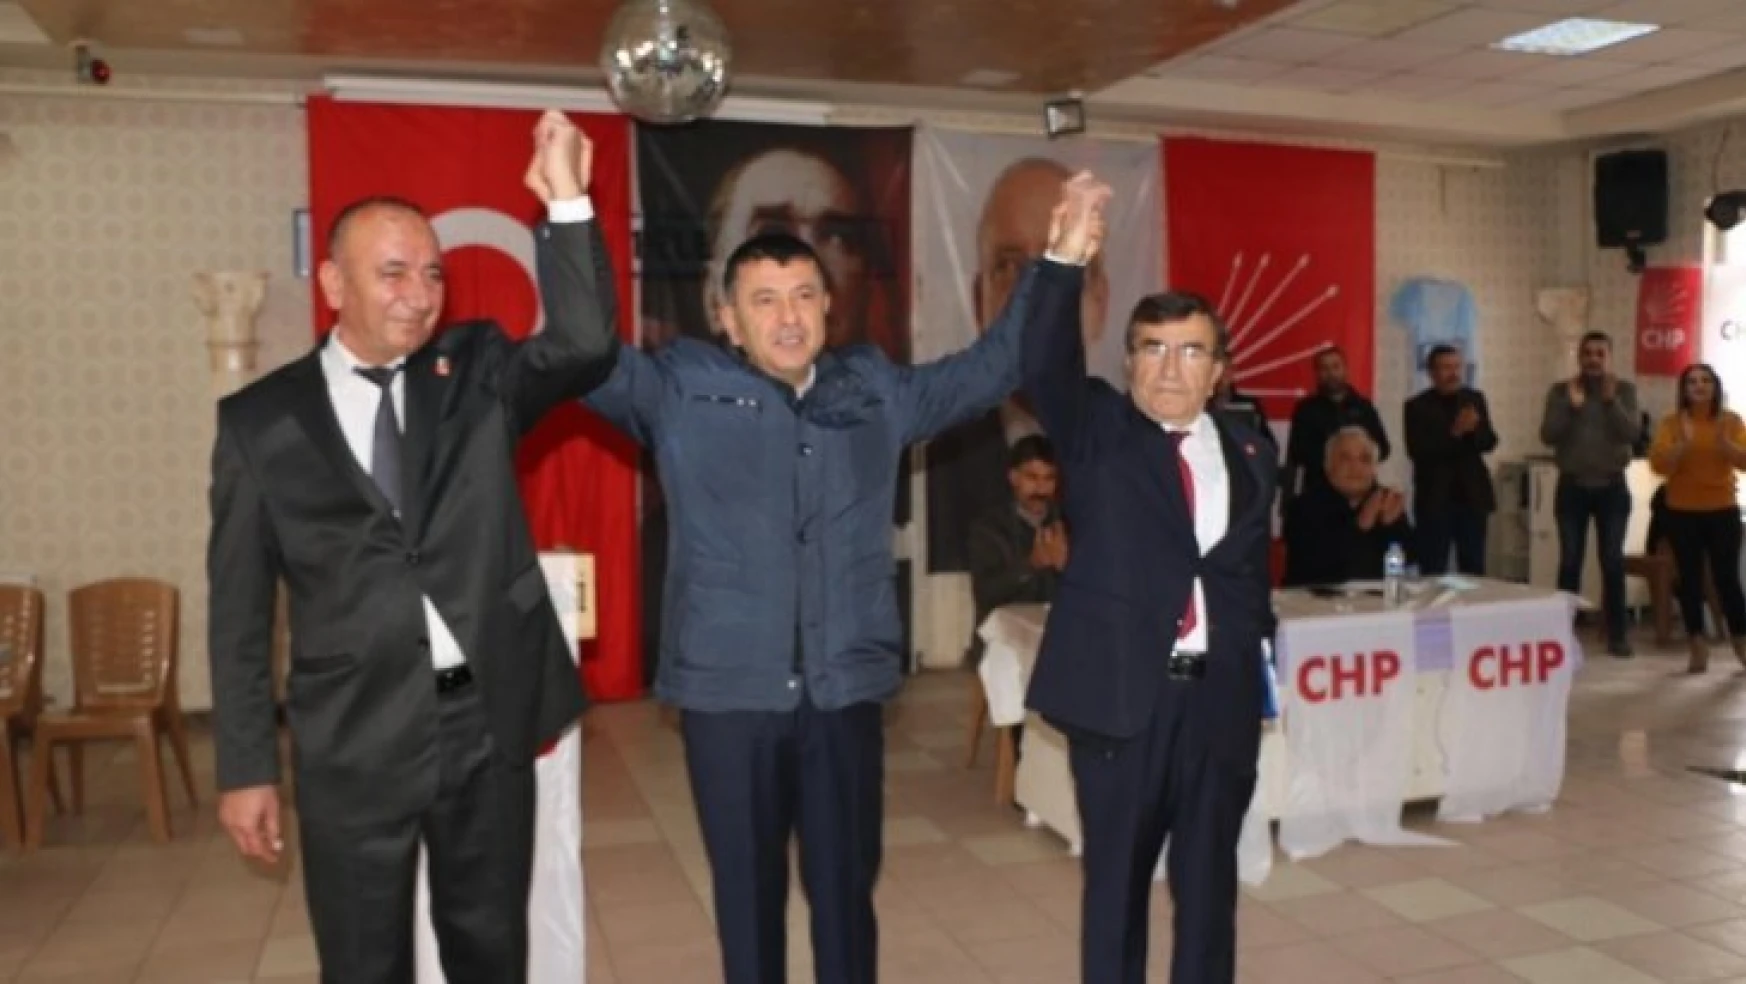 CHP Doğanşehir İlçe Başkanlığına Erdem seçildi